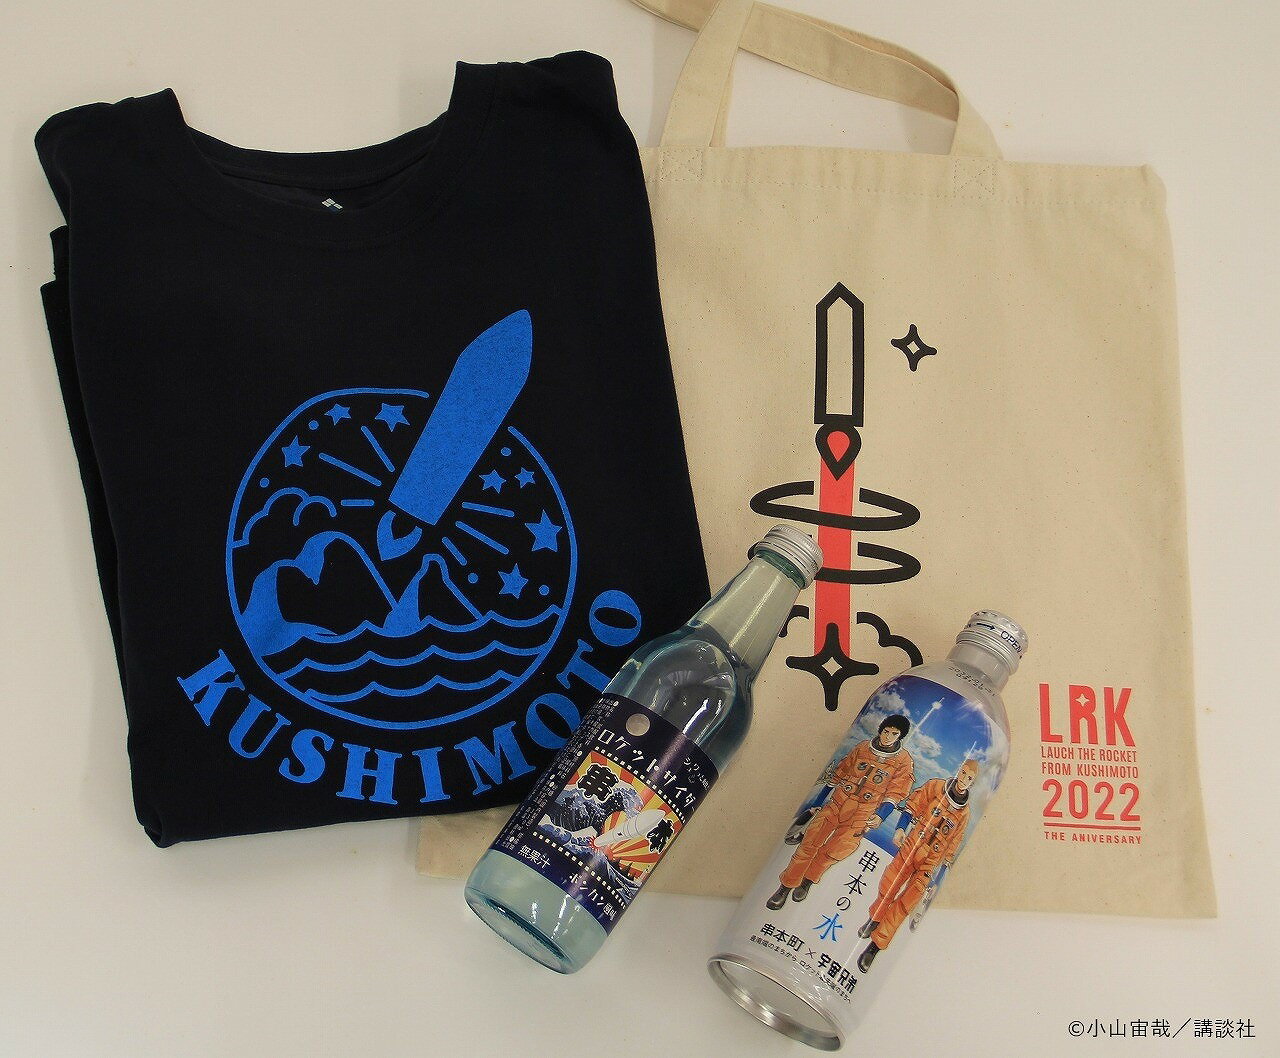 【ふるさと納税】串本ロケットCセット【Tシャツサイズが選べます！】宇宙兄弟コラボラベル「串本の水」 串本町公式ロゴ入りのモンベル社製Tシャツも入ってます。